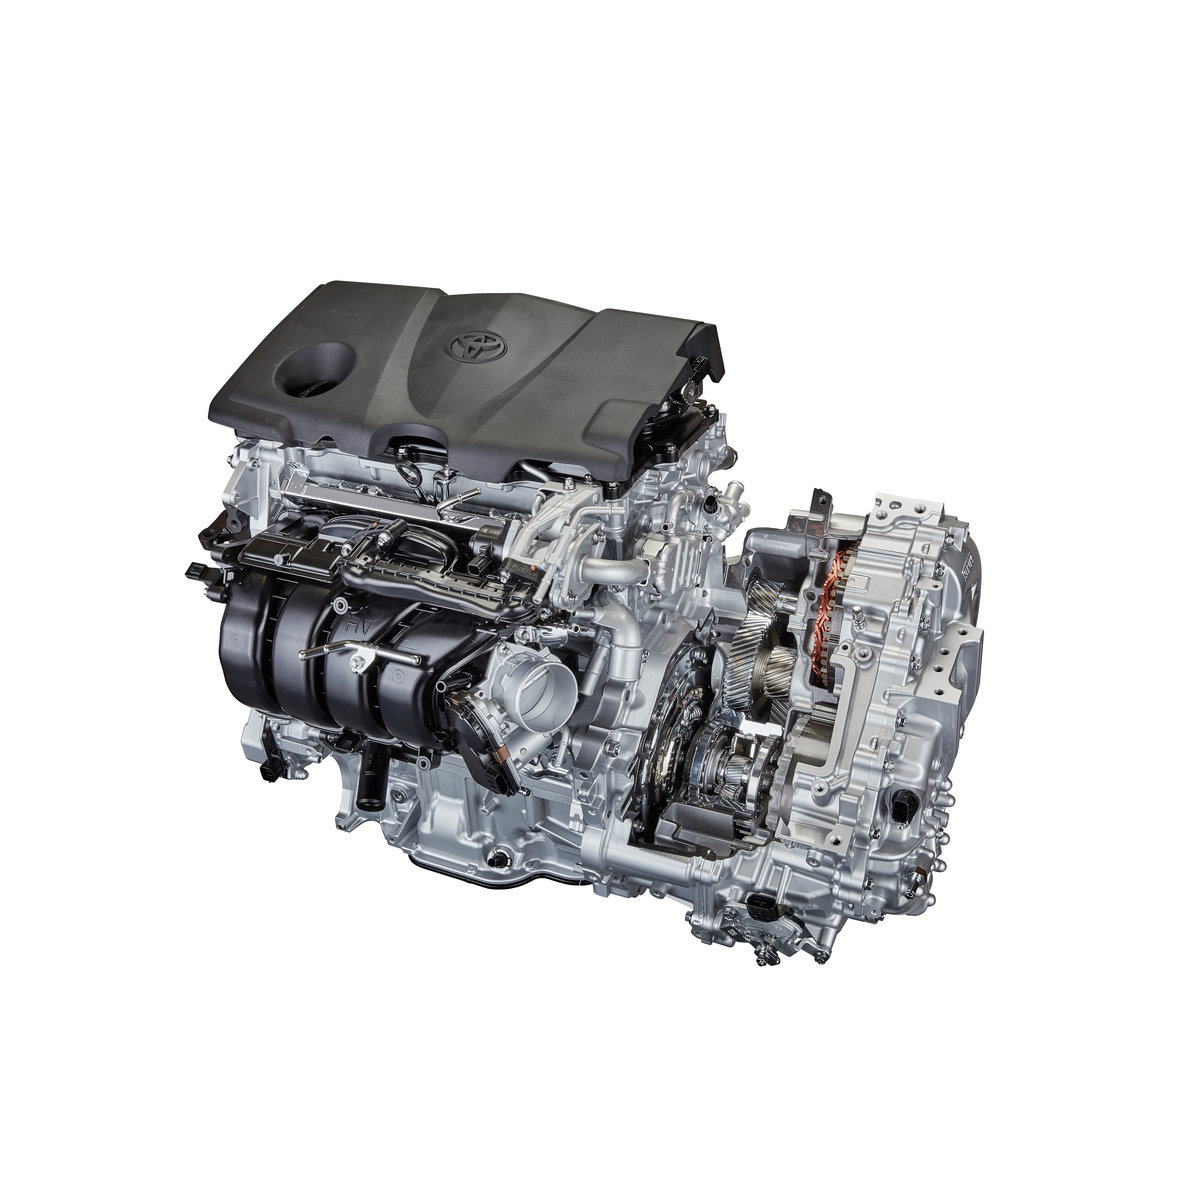 Toyota představuje komponenty pohonného ústrojí na základě architektury TNGA.